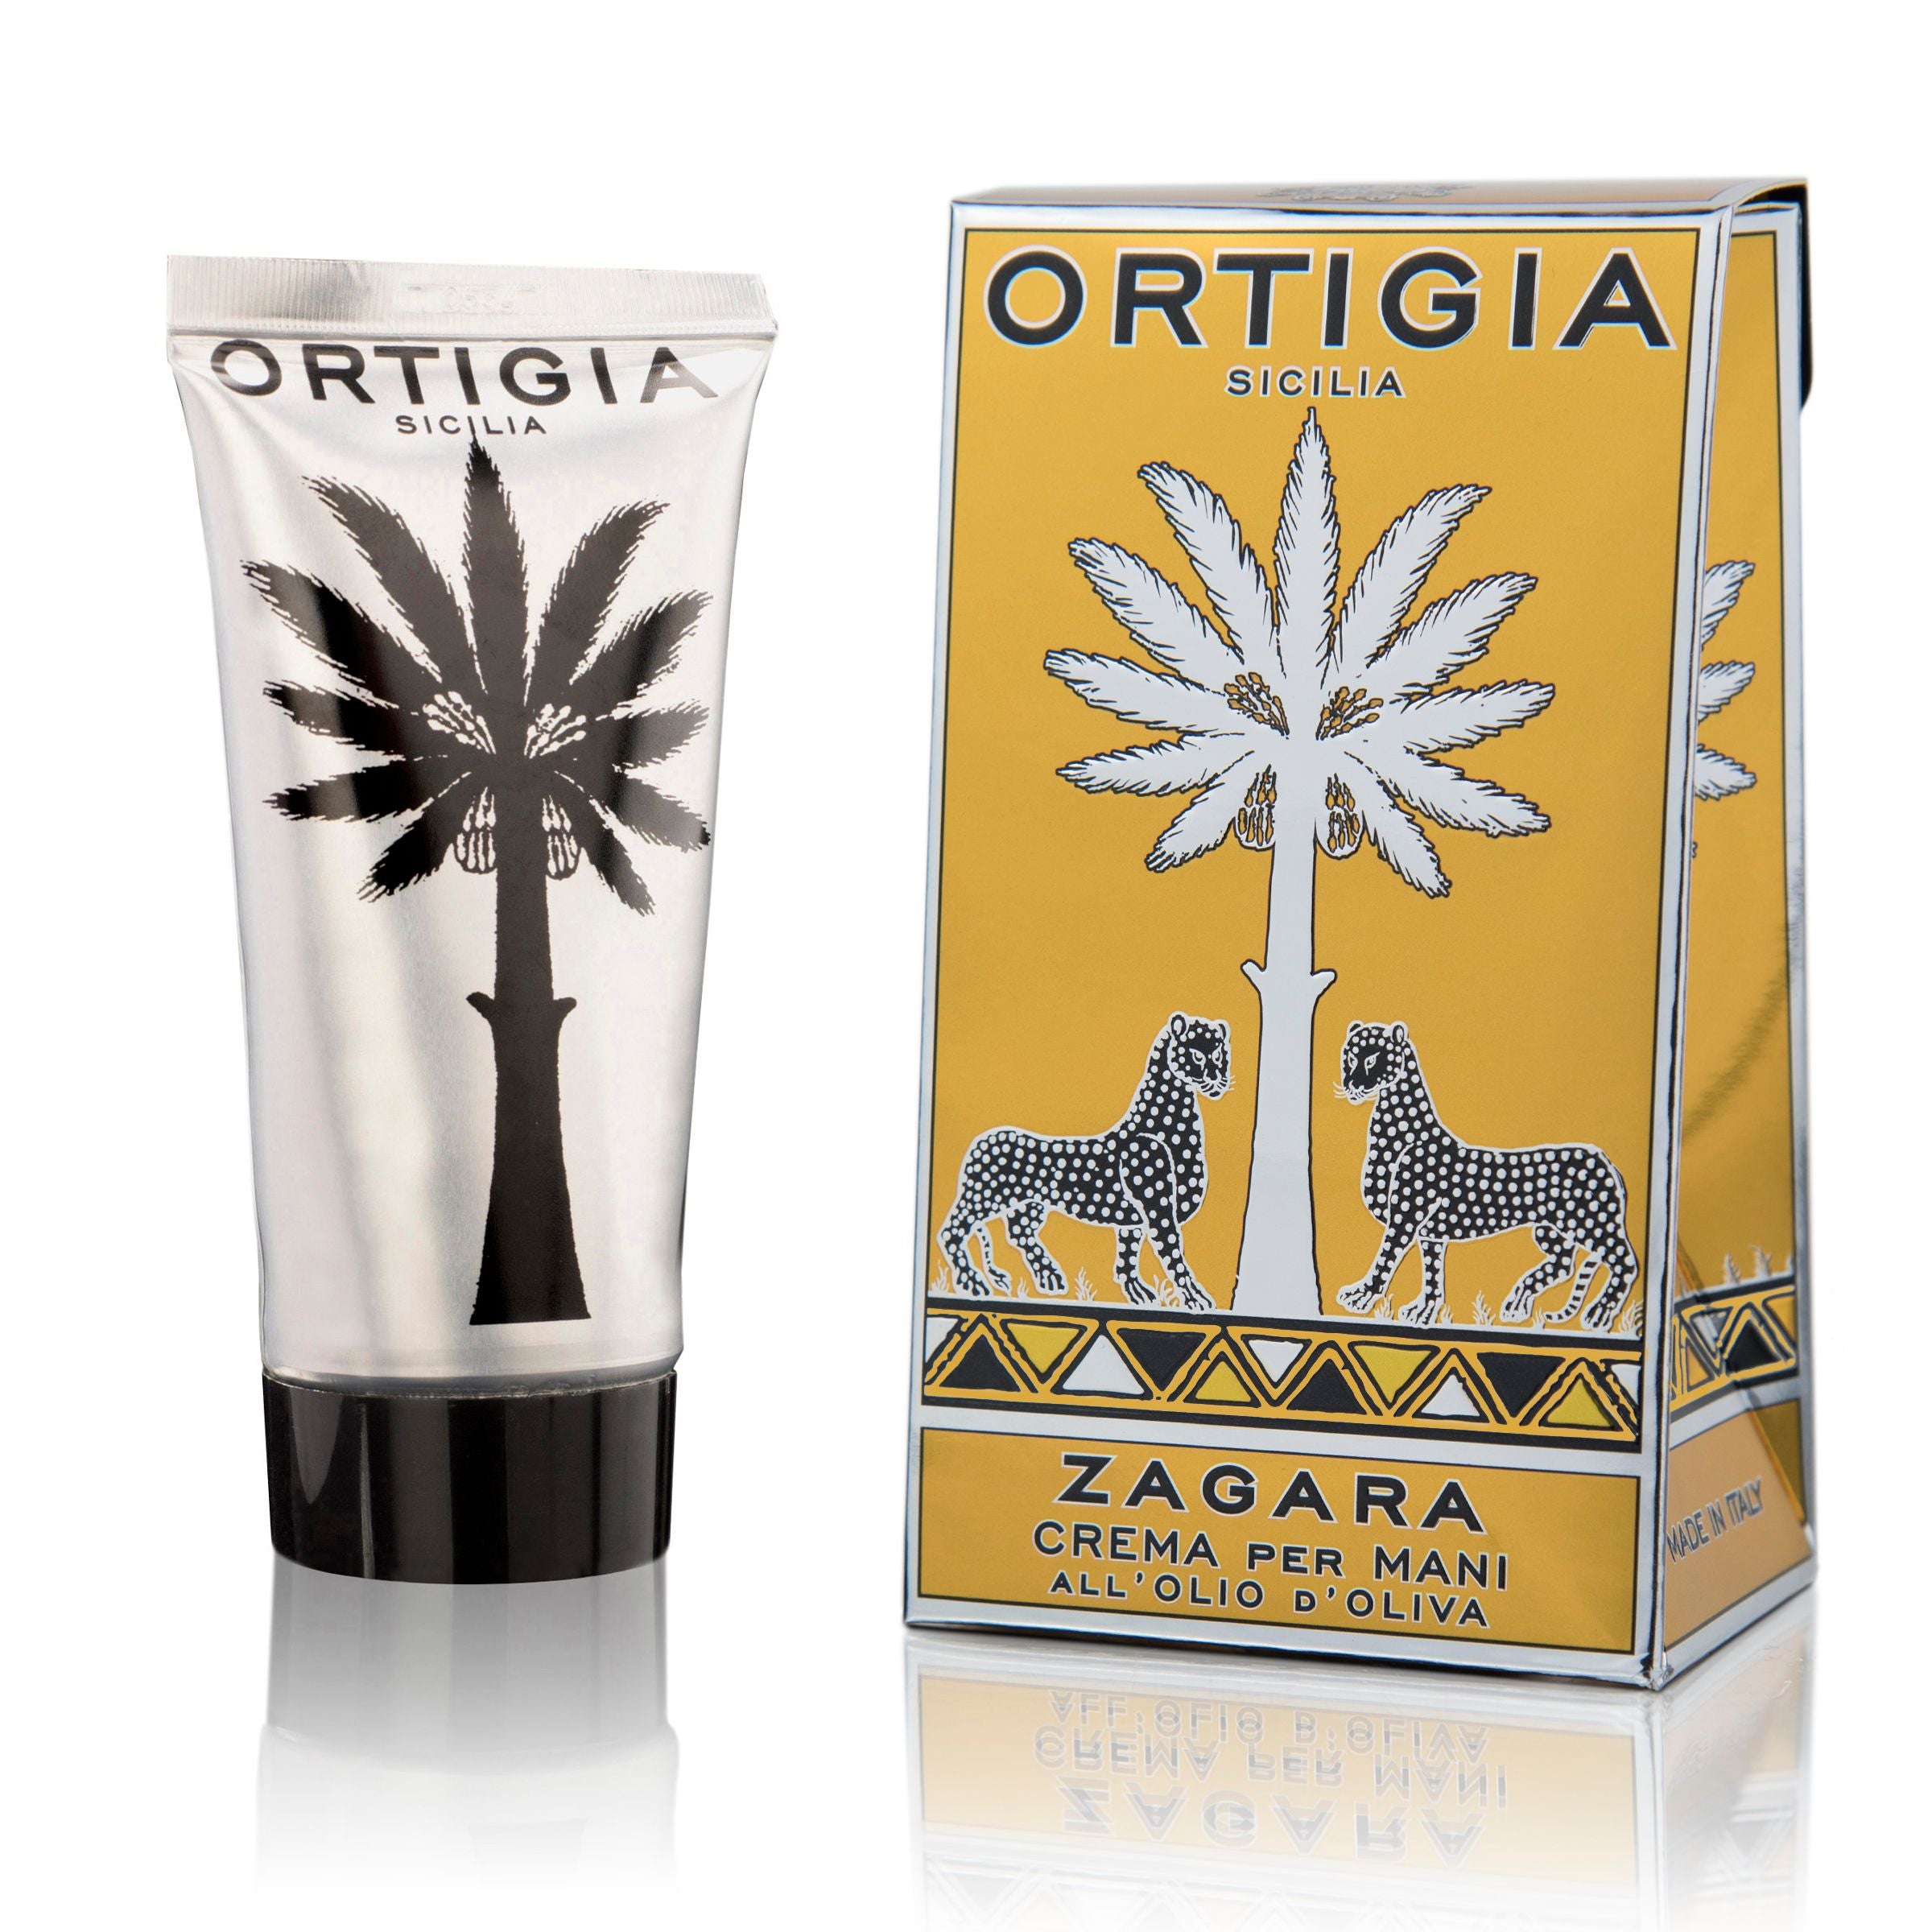 Ortigia Sicilia Zagara Hand Cream